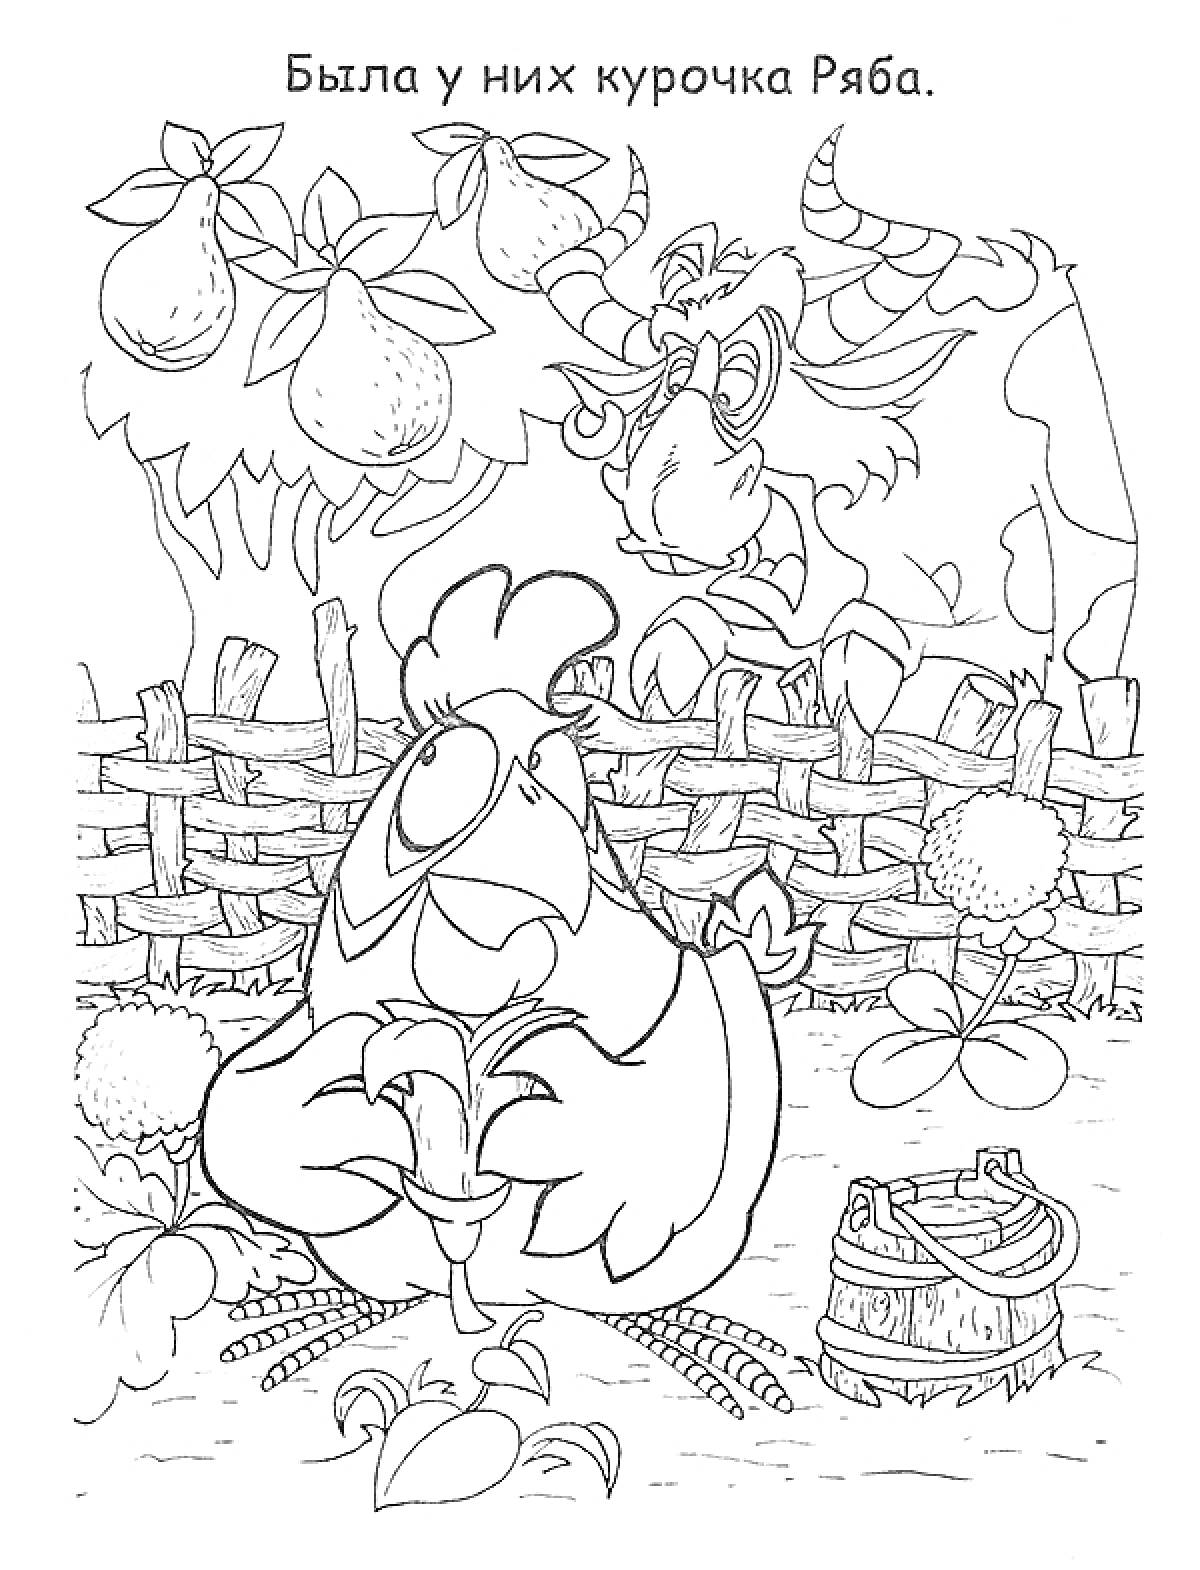 Курочка Ряба в огороде с плетеным забором, корзиной и фруктами на дереве, с коровой на заднем плане